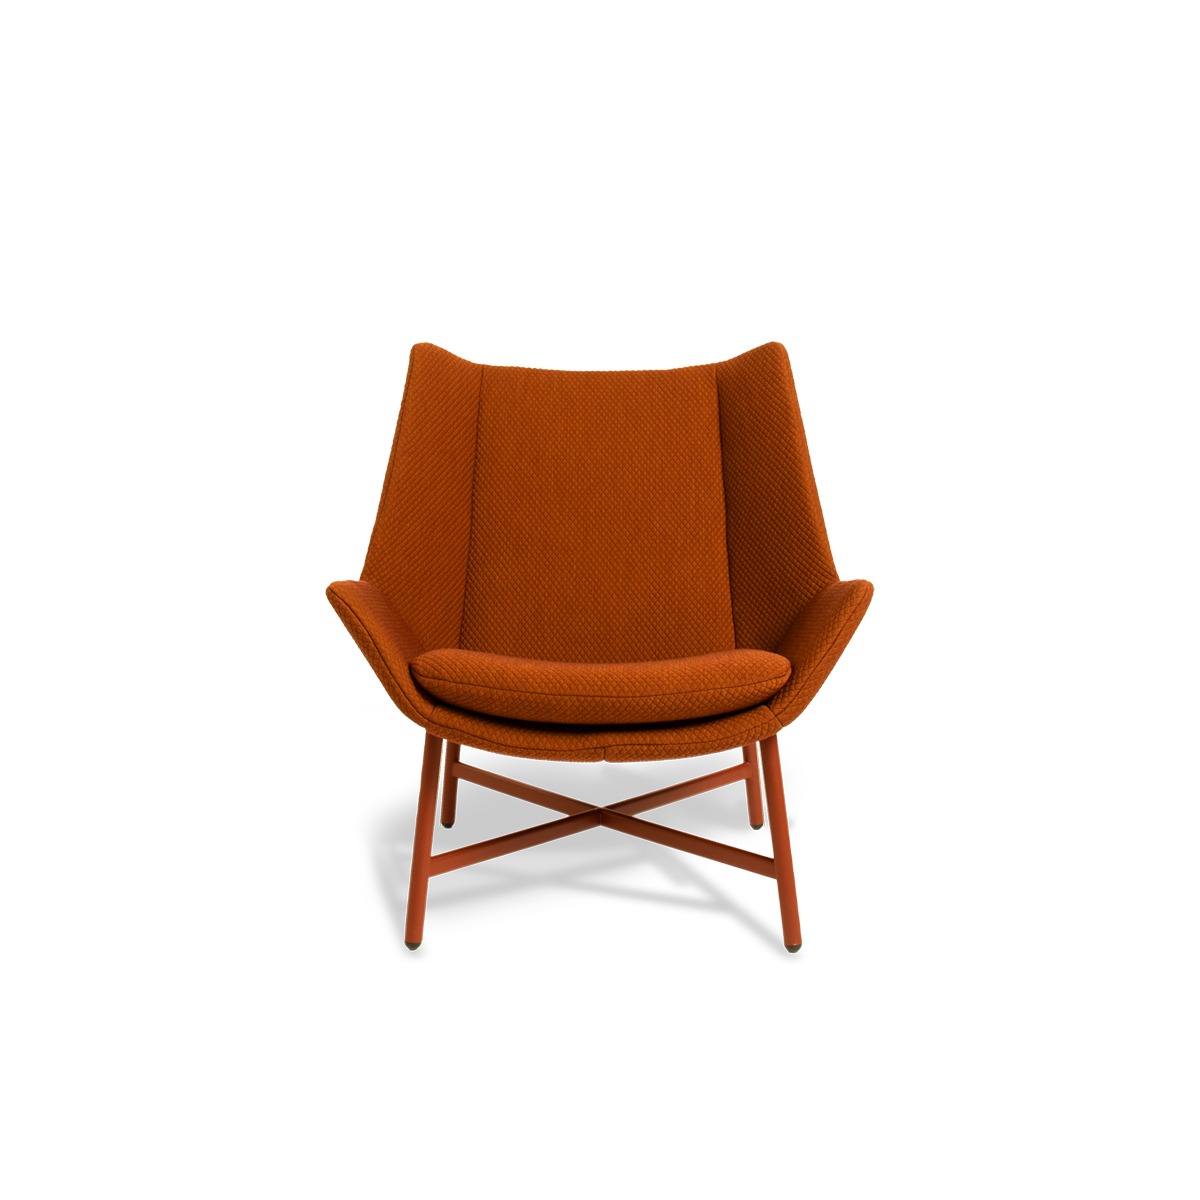 Gelderland 10020 Chair